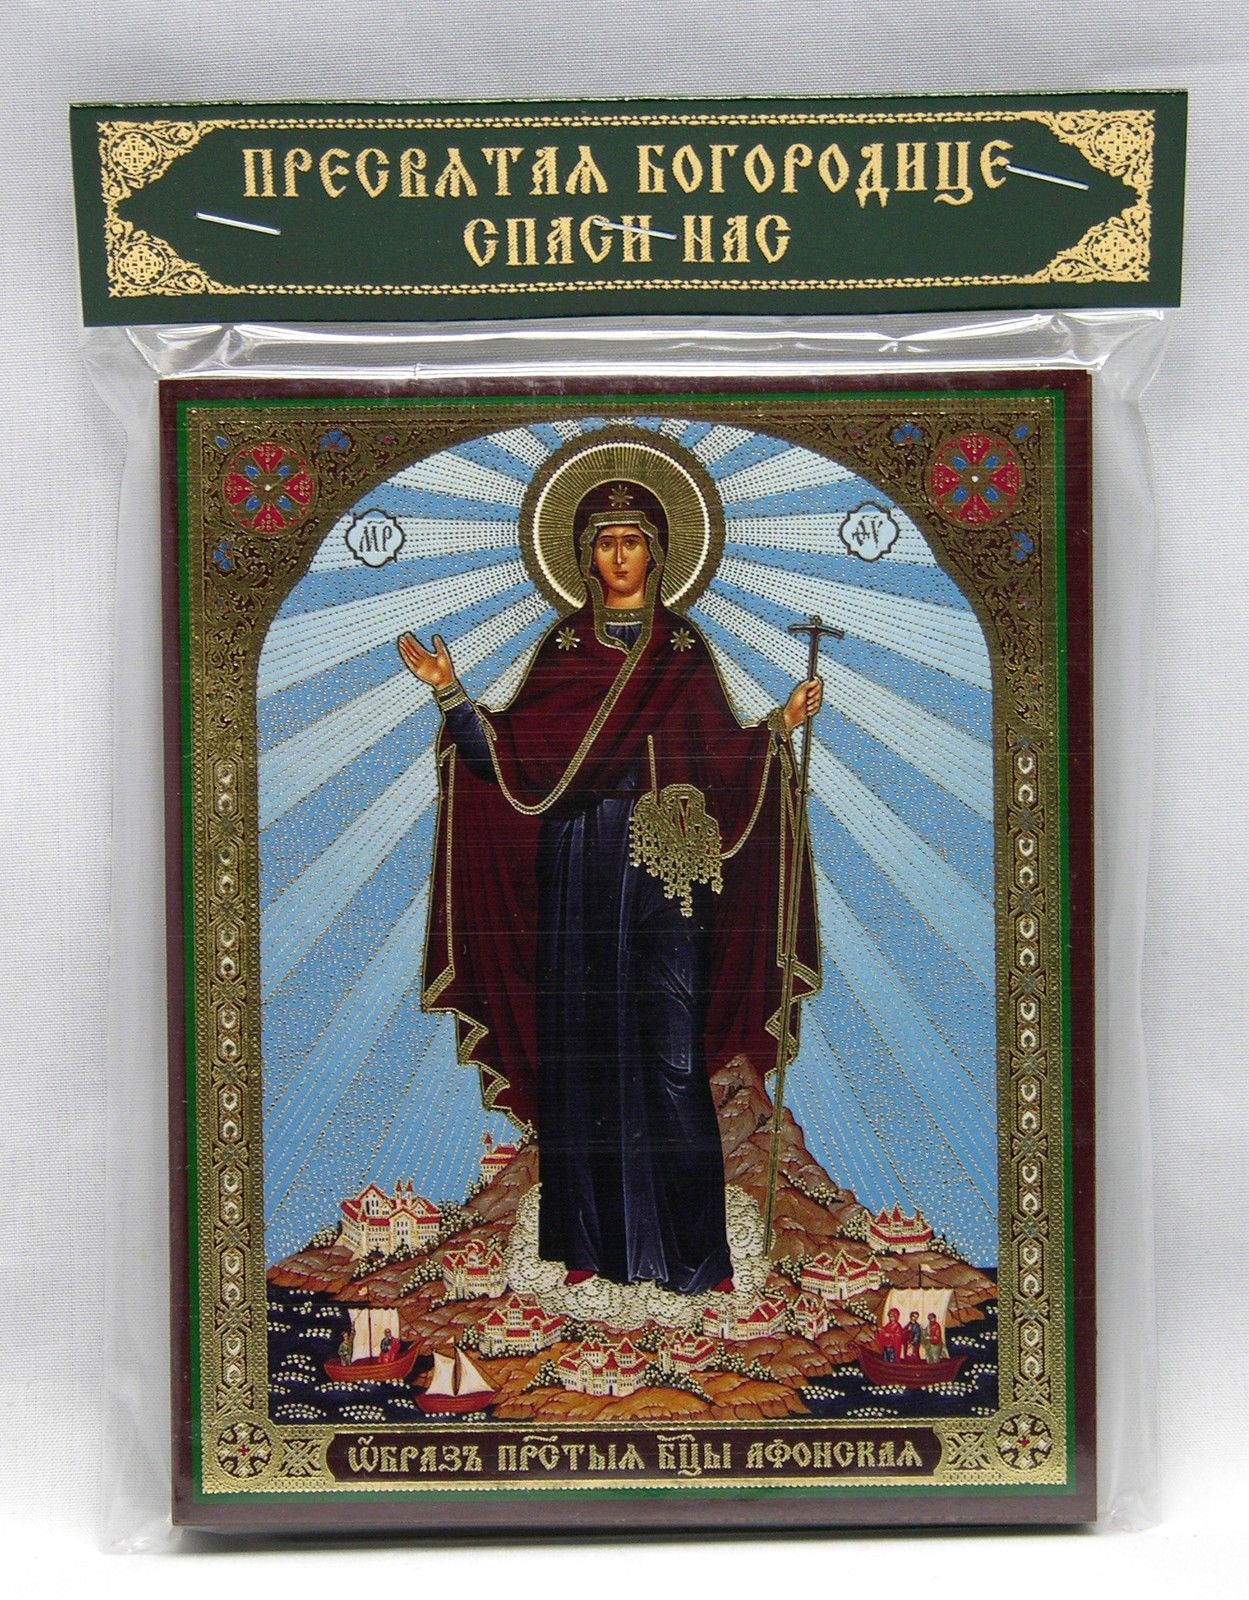 Богородица Афонская освящена 70027